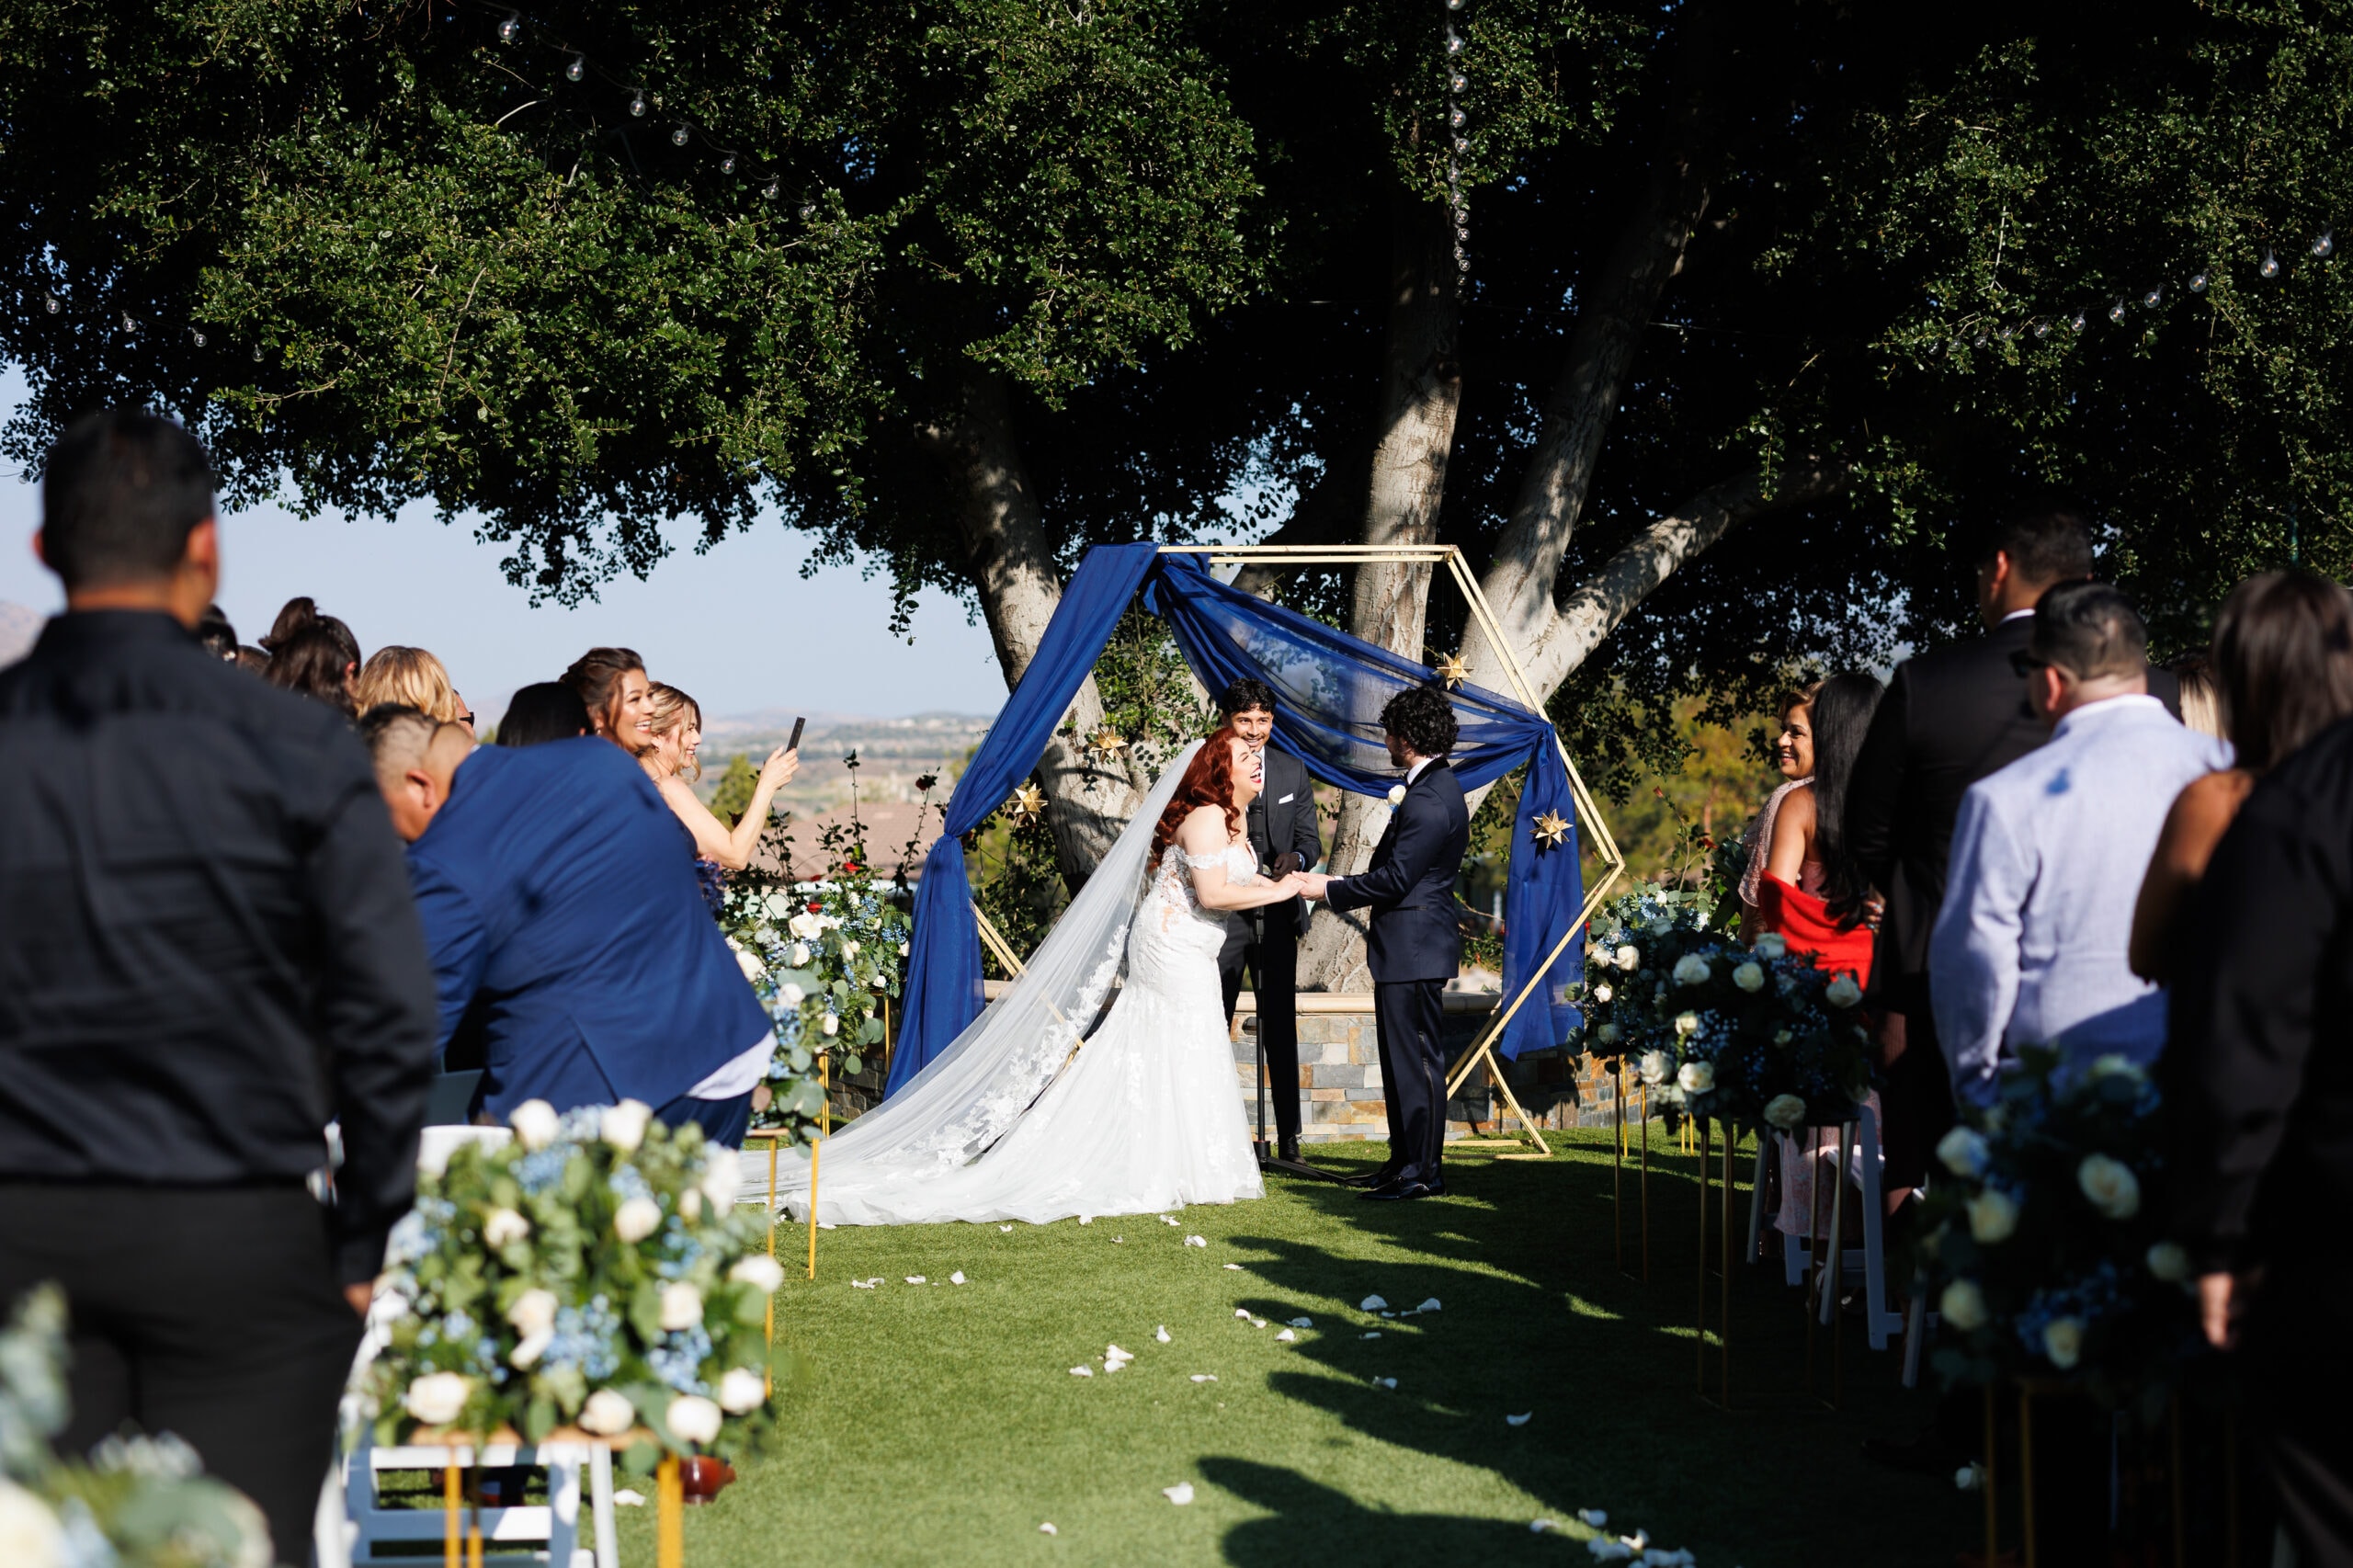 Glen Ivy Golf Club wedding ceremony by Courtney McManaway Photography